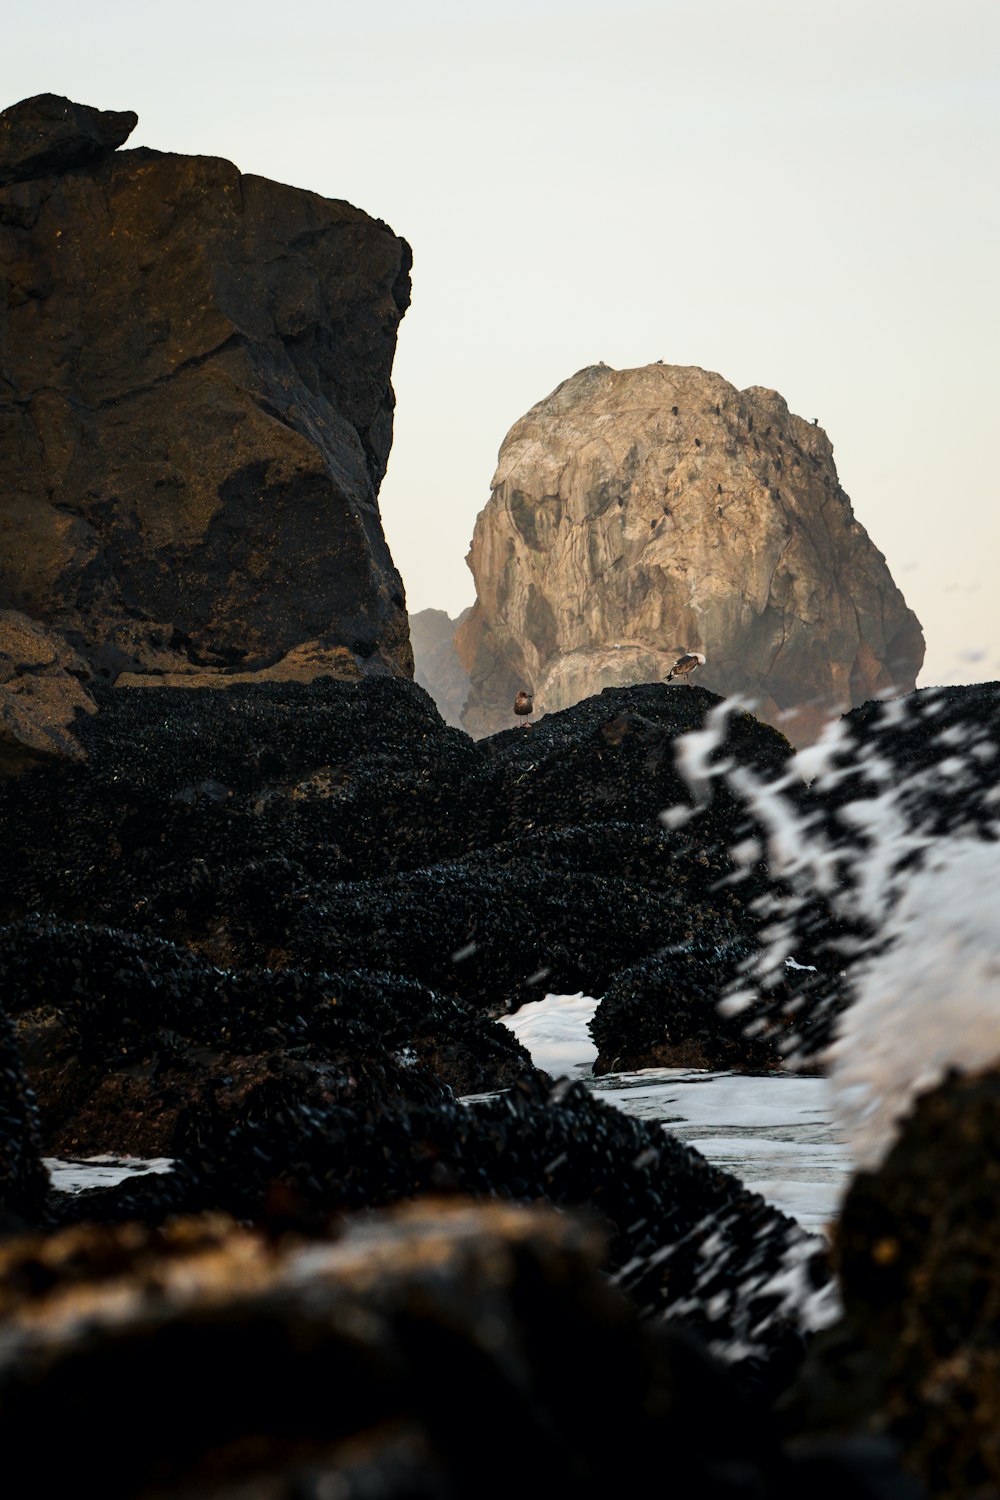 바다 옆 해변 꼭대기에 앉아 있는 큰 바위